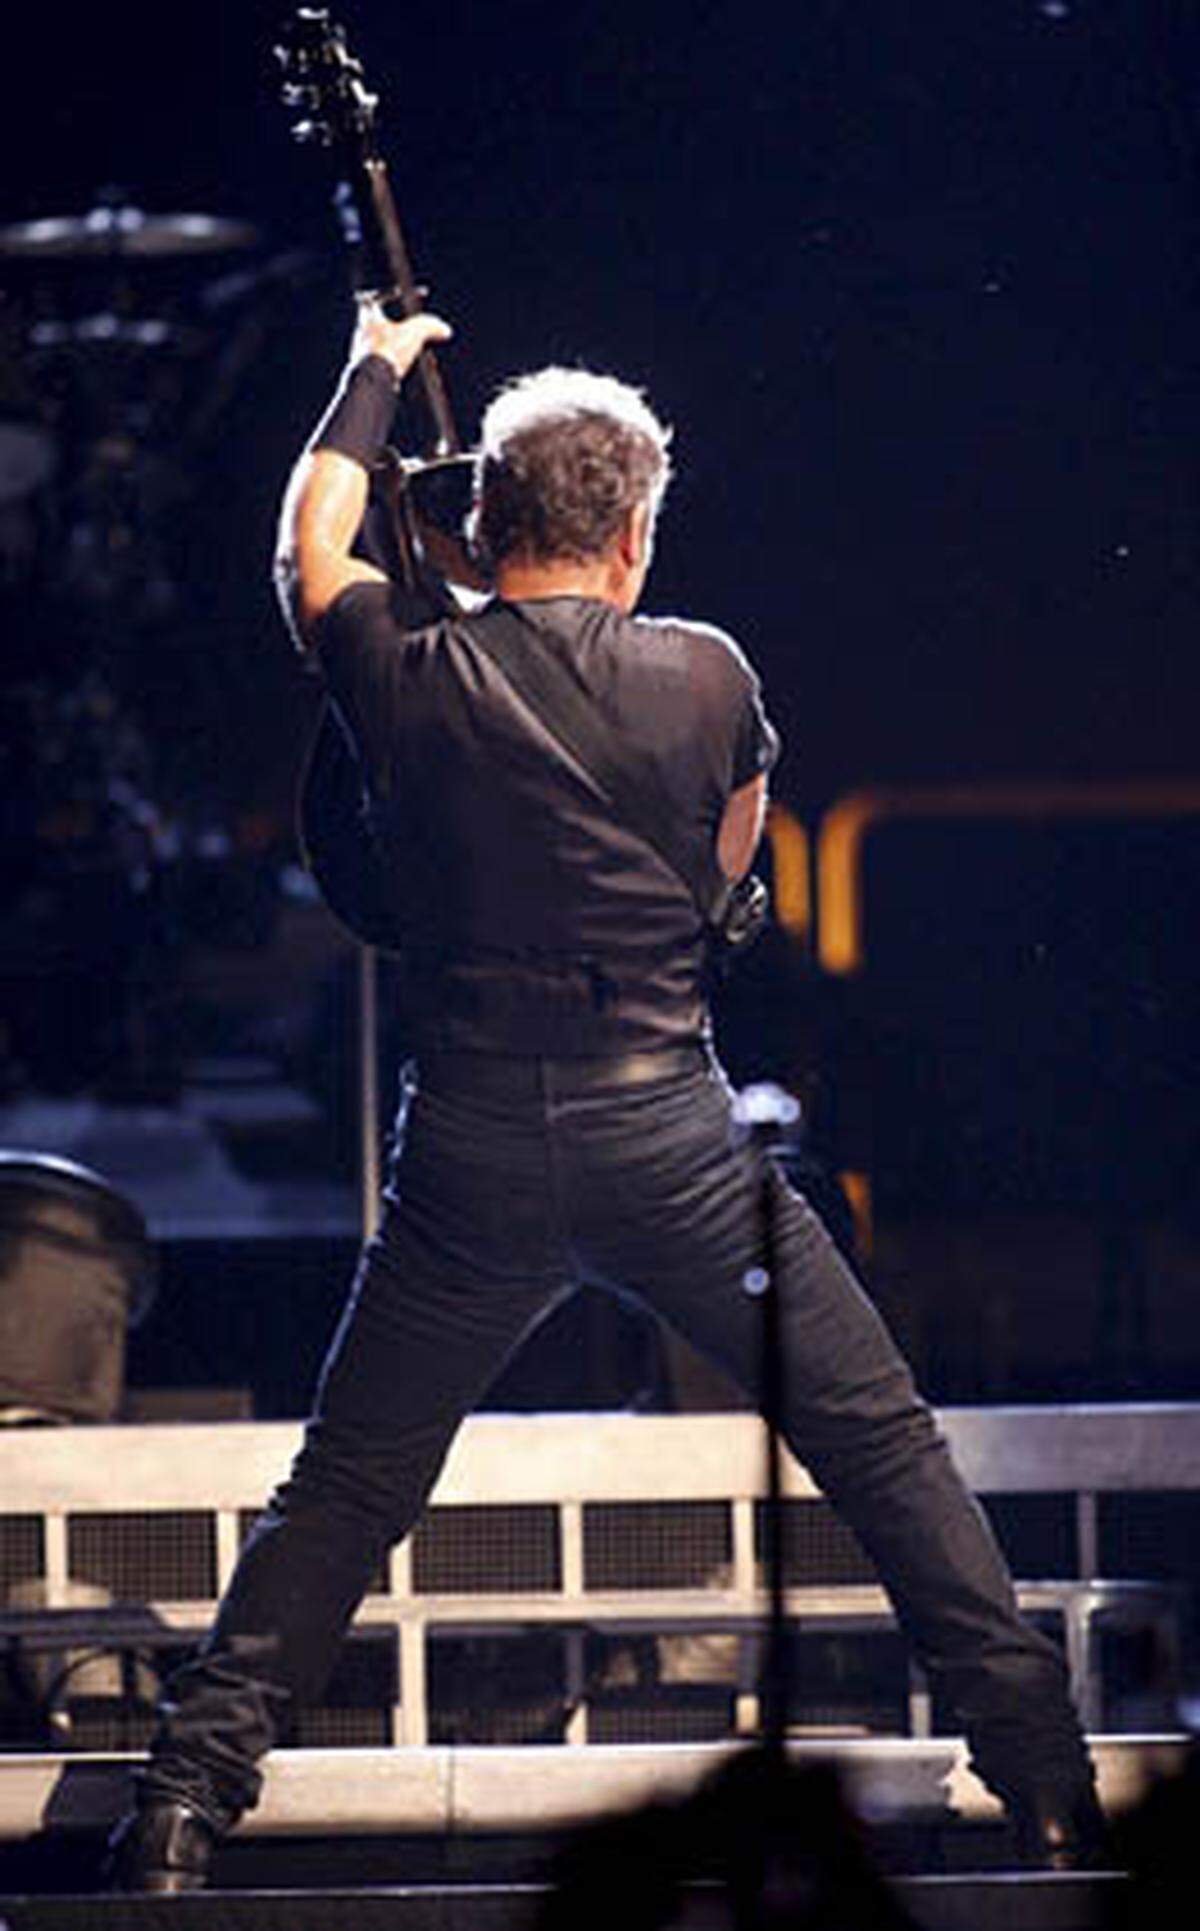 Erst nach den Terroranschlägen vom 11. September 2001 konnte Springsteen gemeinsam mit seiner Band wieder bei den Fans punkten ("The Rising"). Und die Bergfahrt scheint Bergauf zu gehen: Springsteens aktuelle Tour erweist sich in den meisten Städten als absoluter Hit.